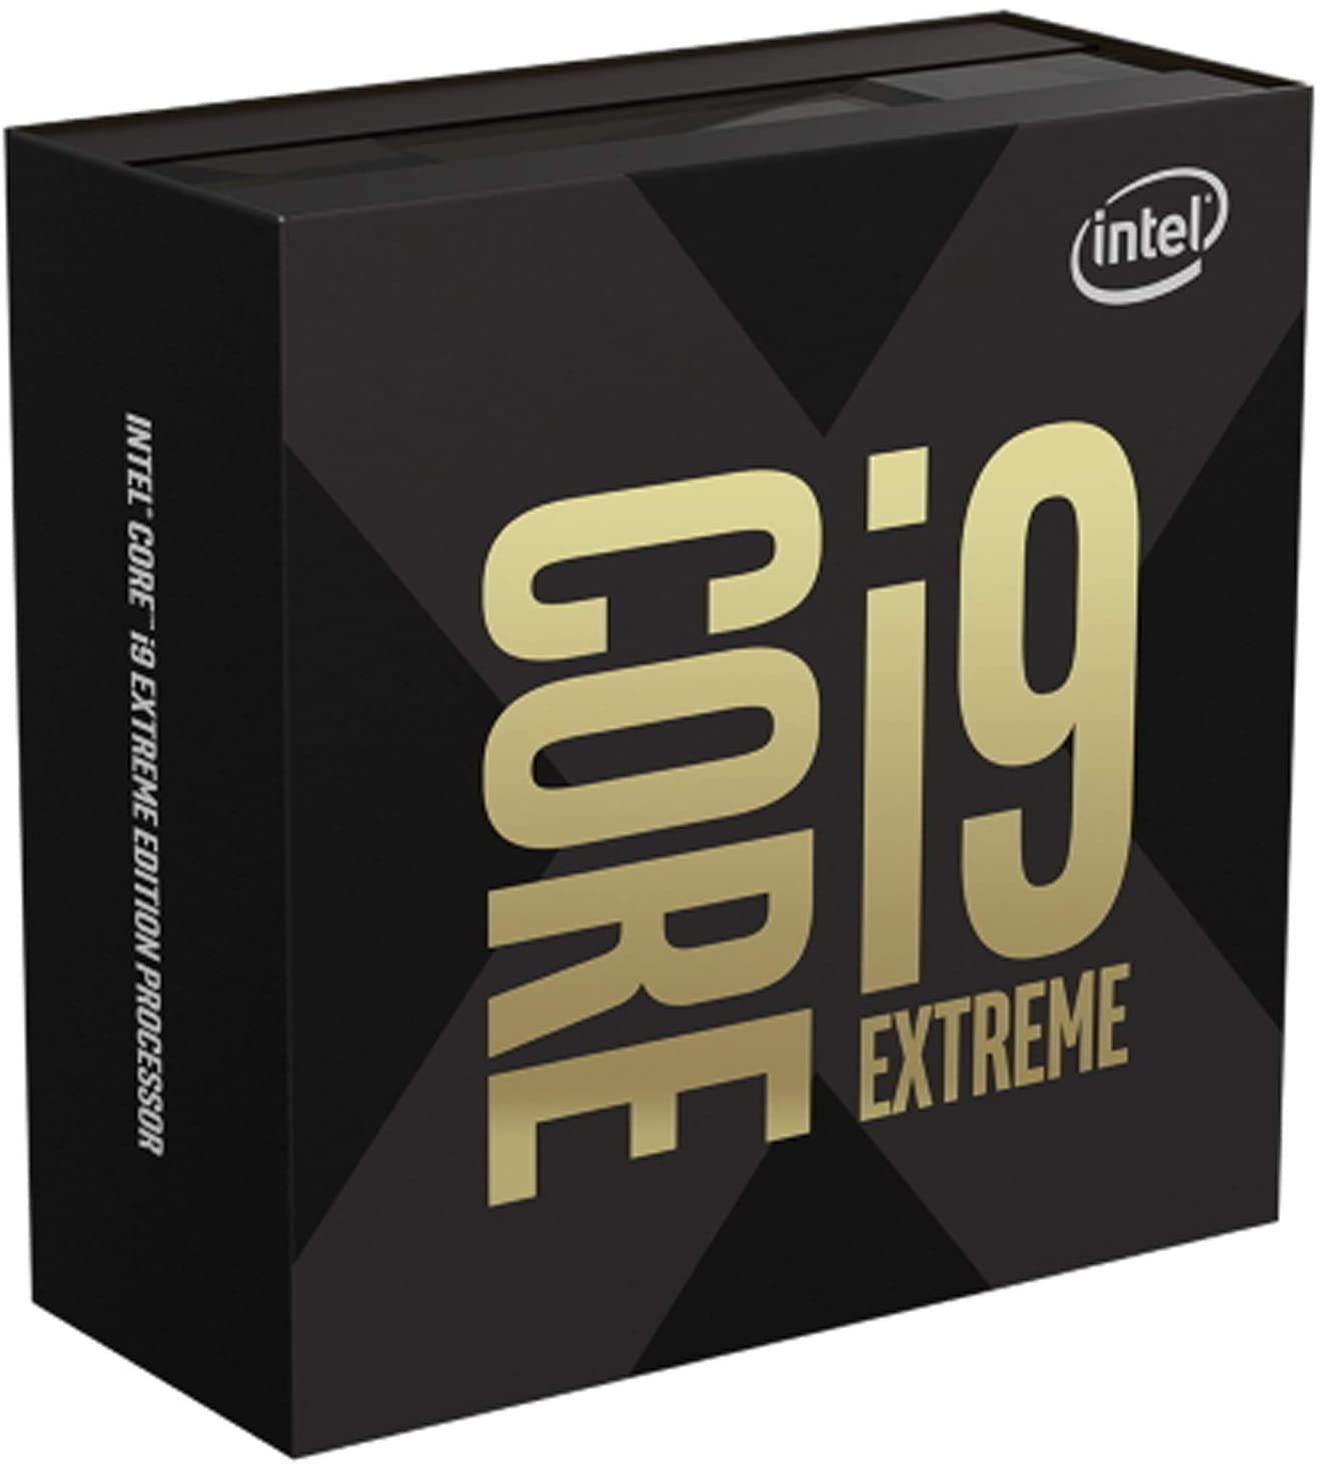 価格 Com インテル Core I9 xe Extreme Edition Box スペック 仕様